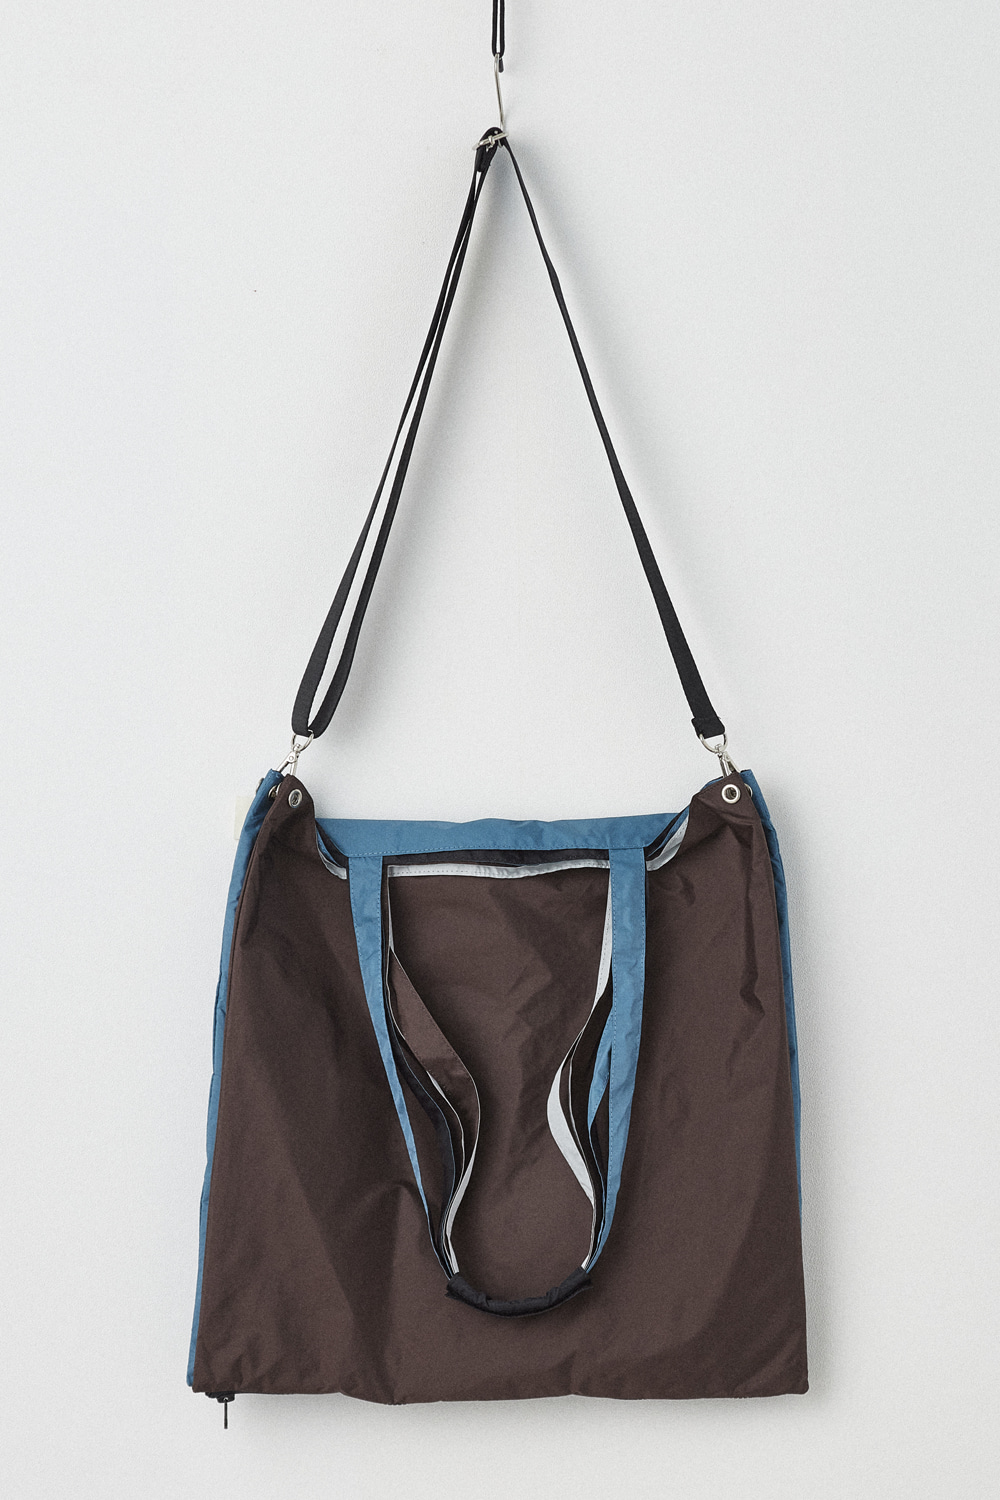 Modular Bag Brown/Ocean Blue